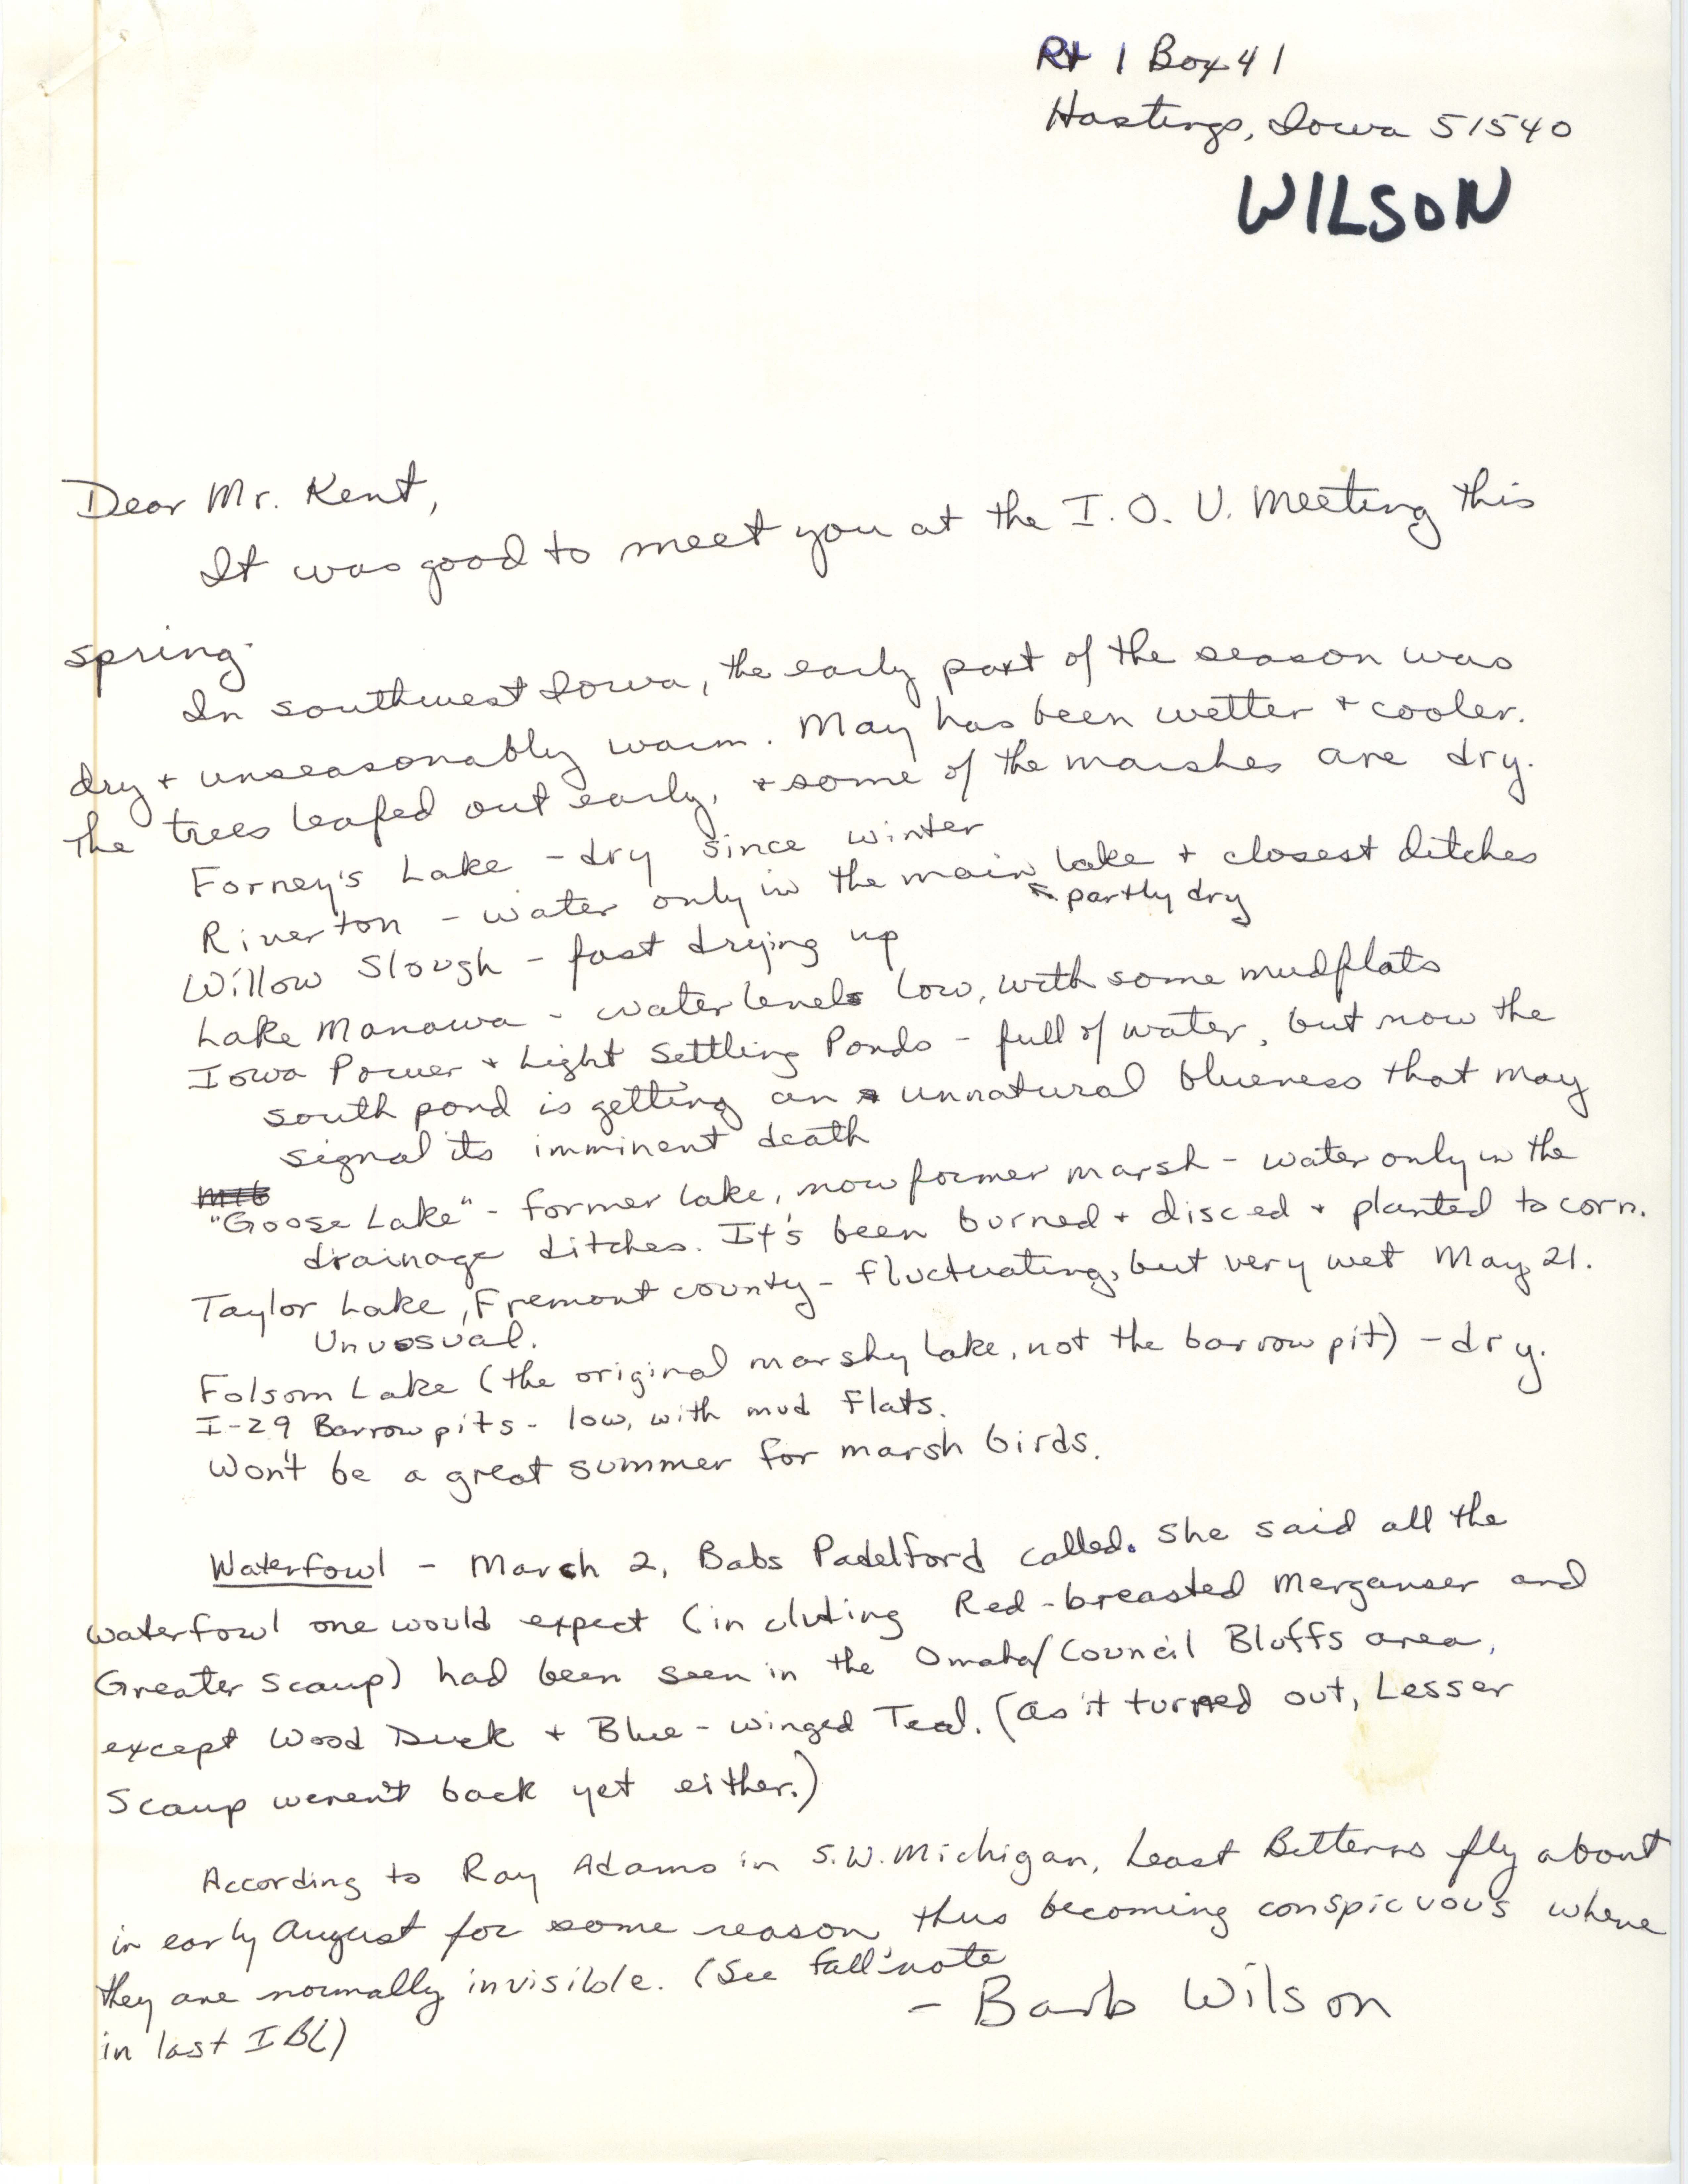 Barb Wilson letter to Thomas Kent regarding spring sightings, spring 1981